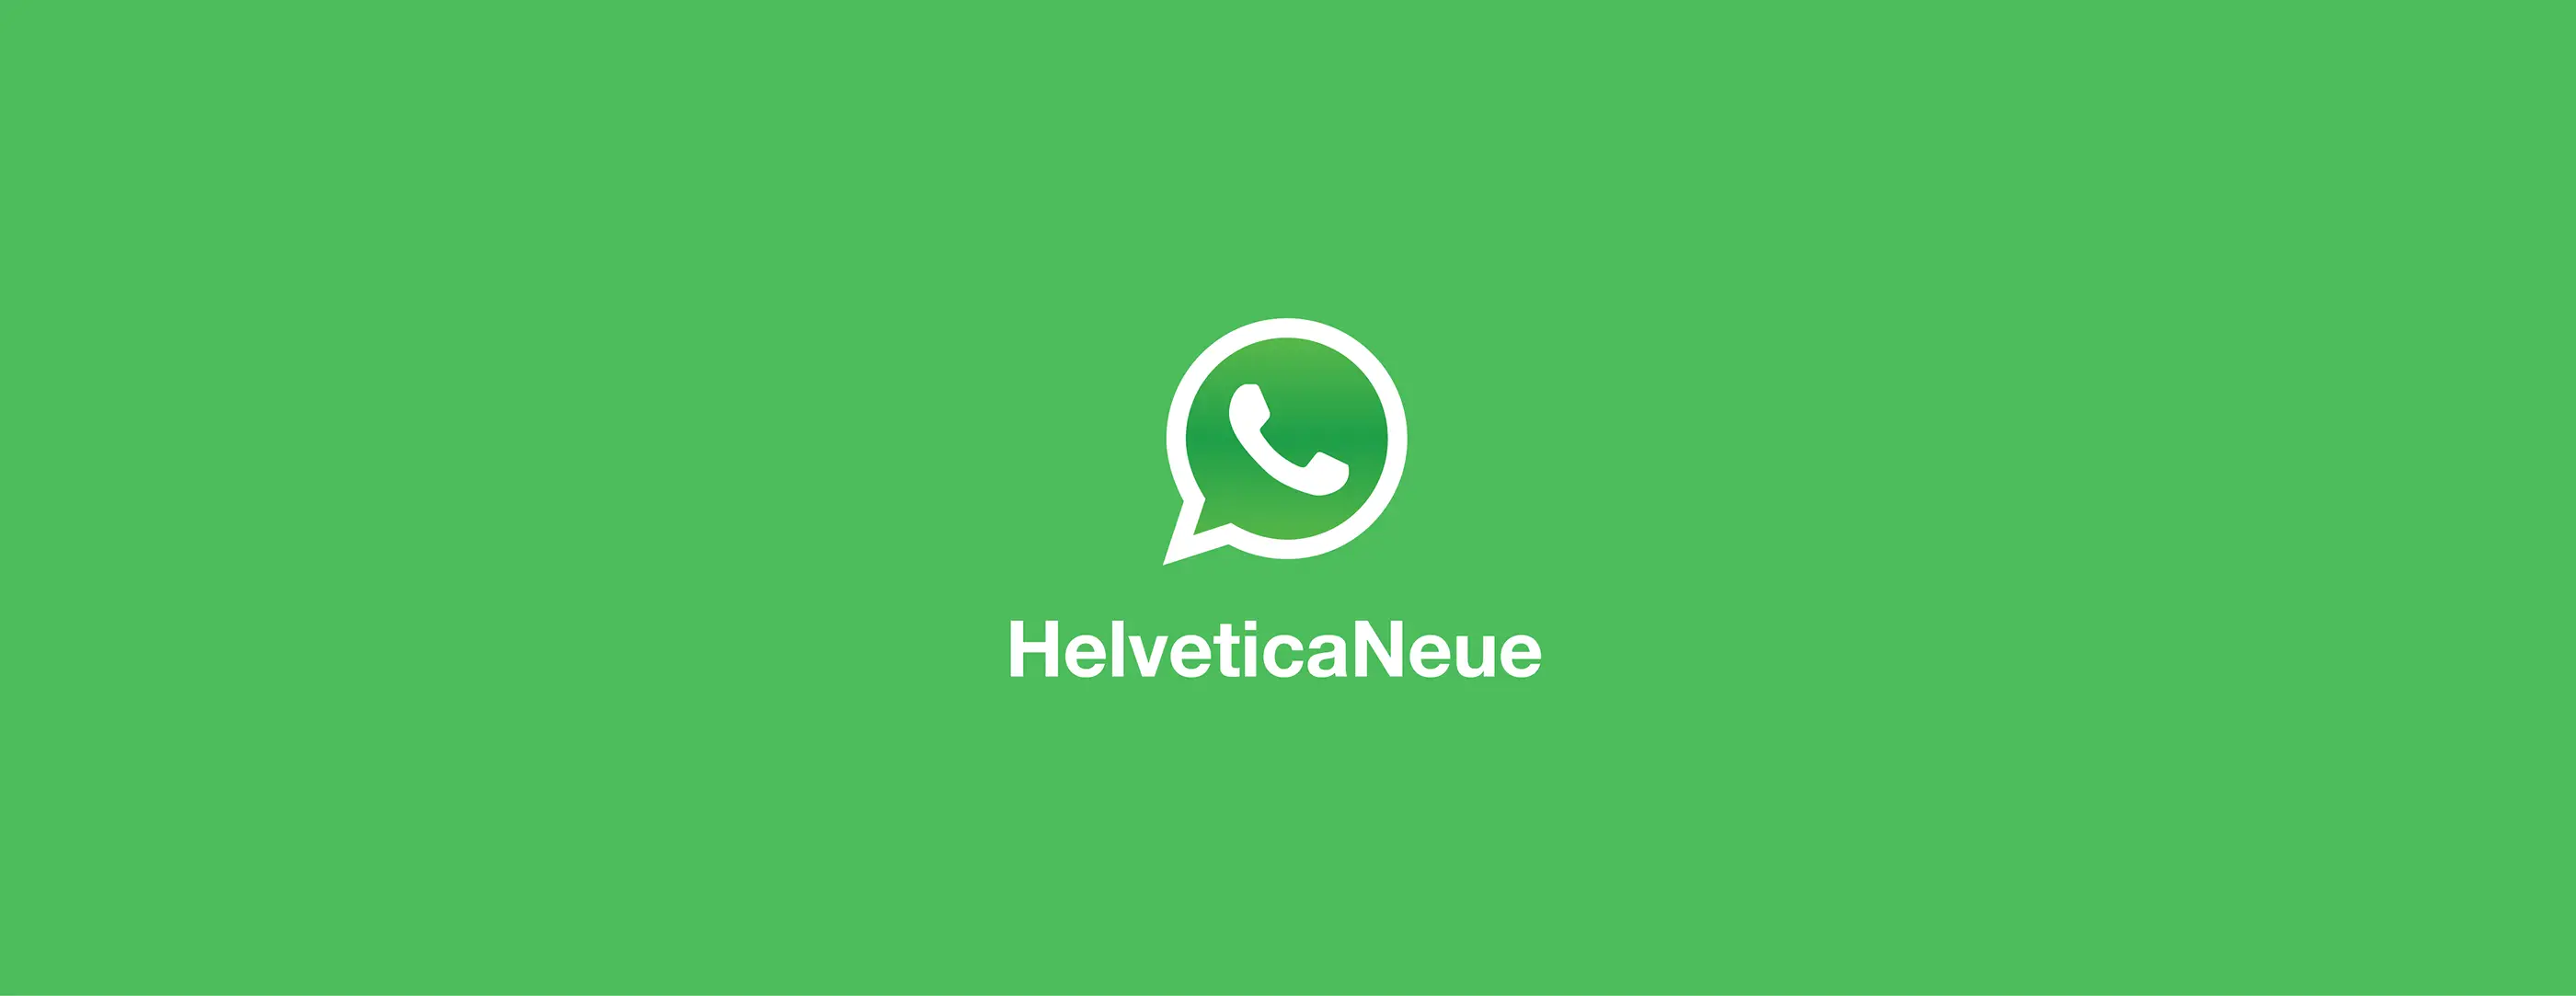 wersm-logo-font-whatsapp-helvetica-neue